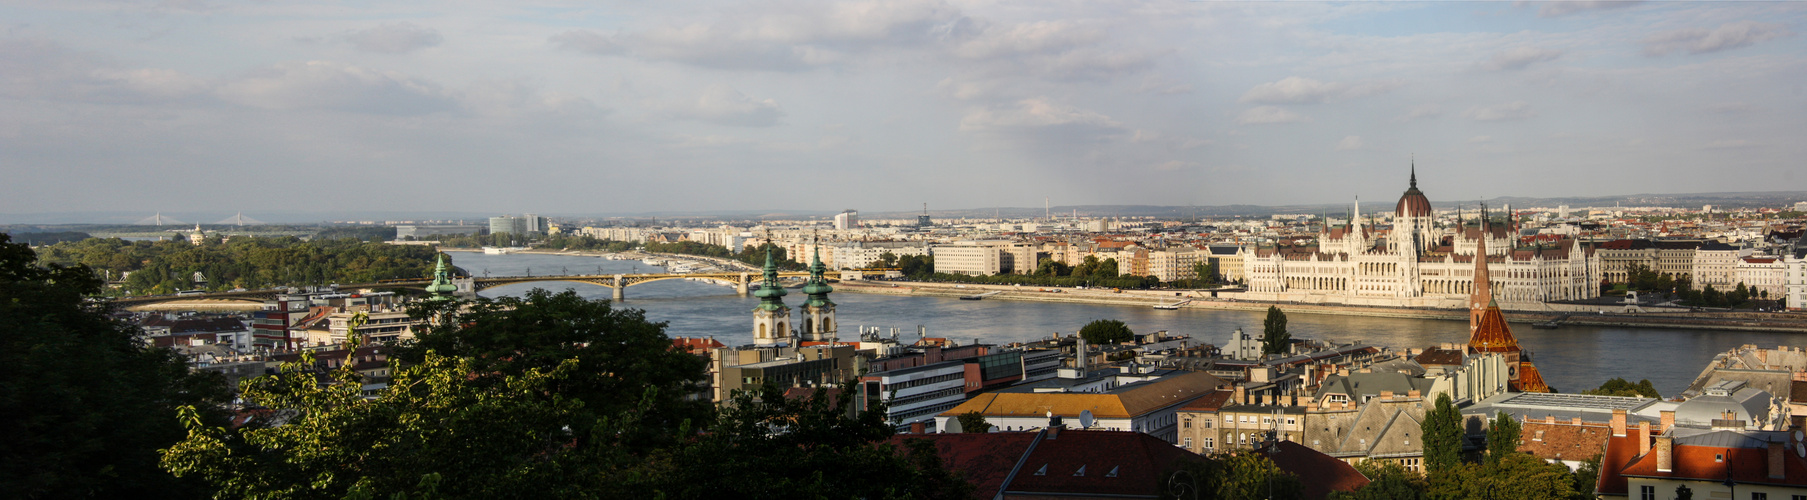 Panorama-Aufnahme Budapest